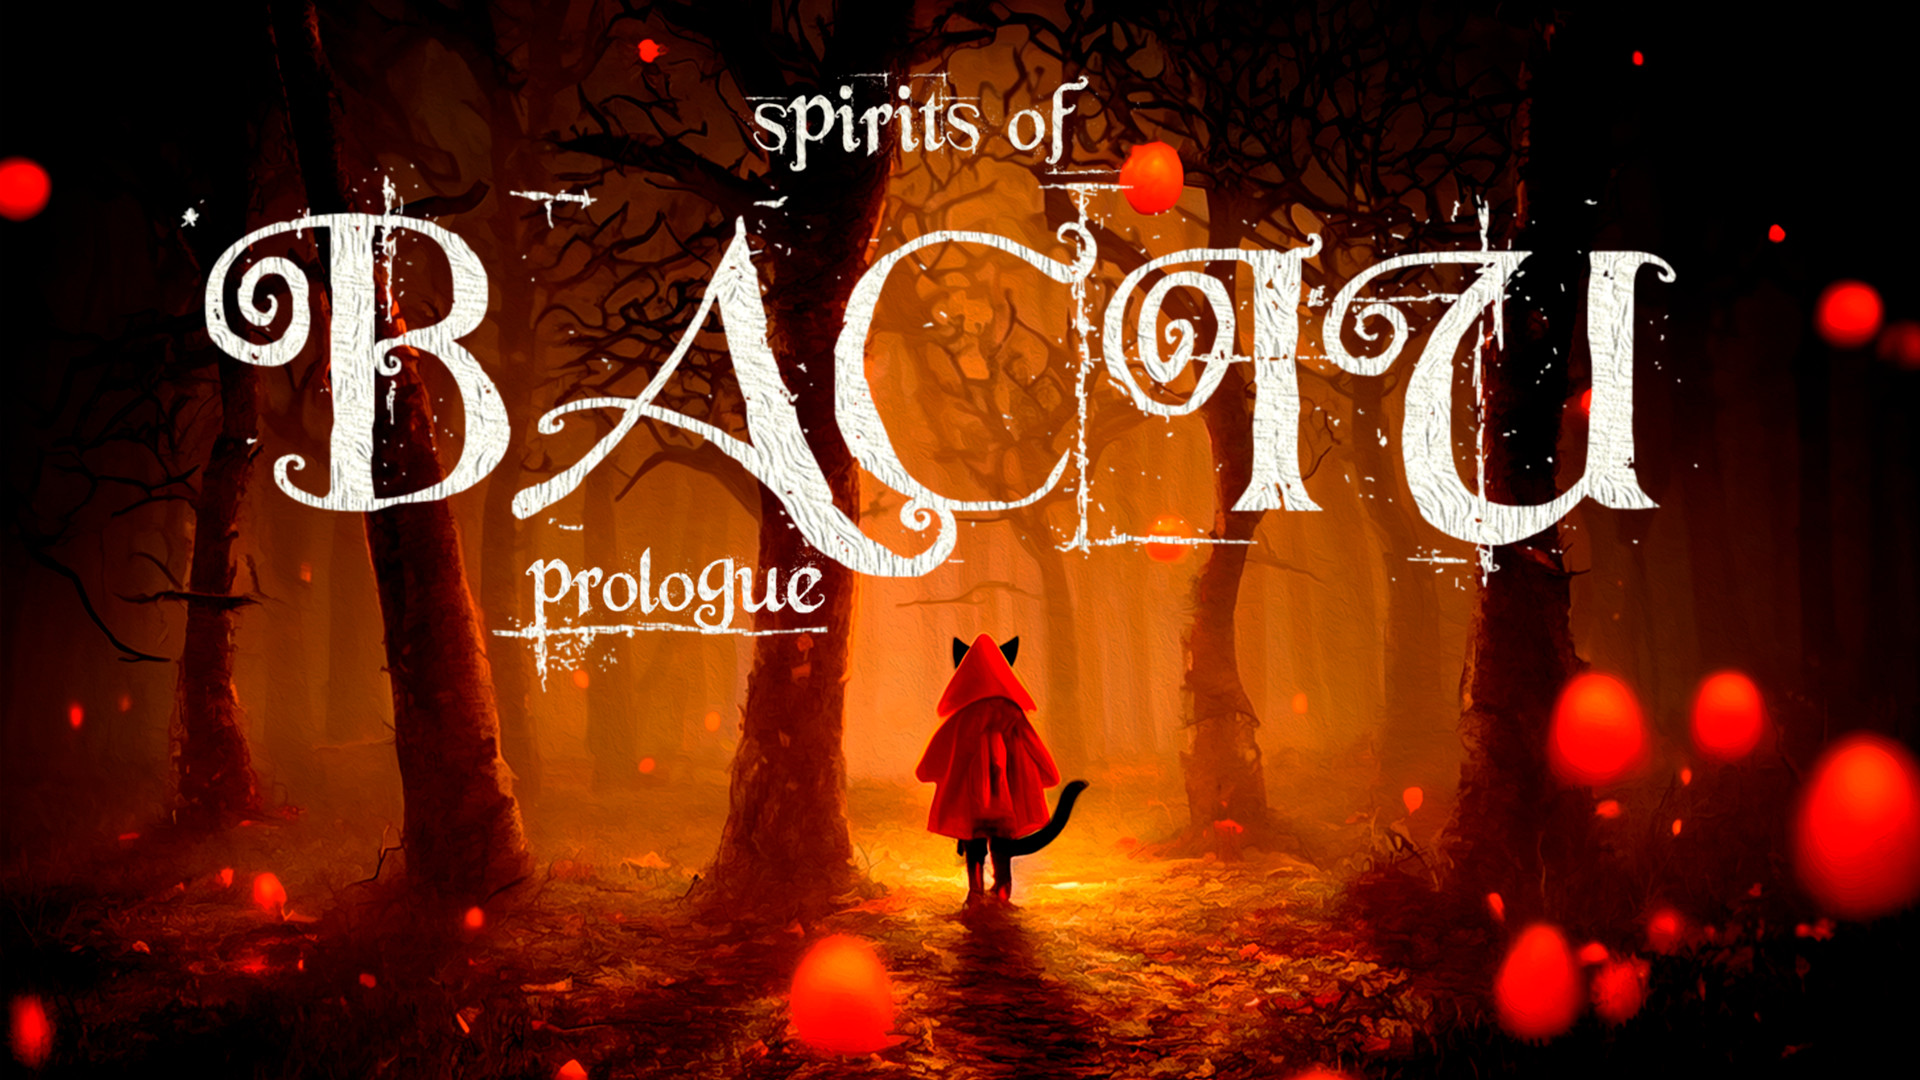 Spirits of Baciu Prologue Teaser